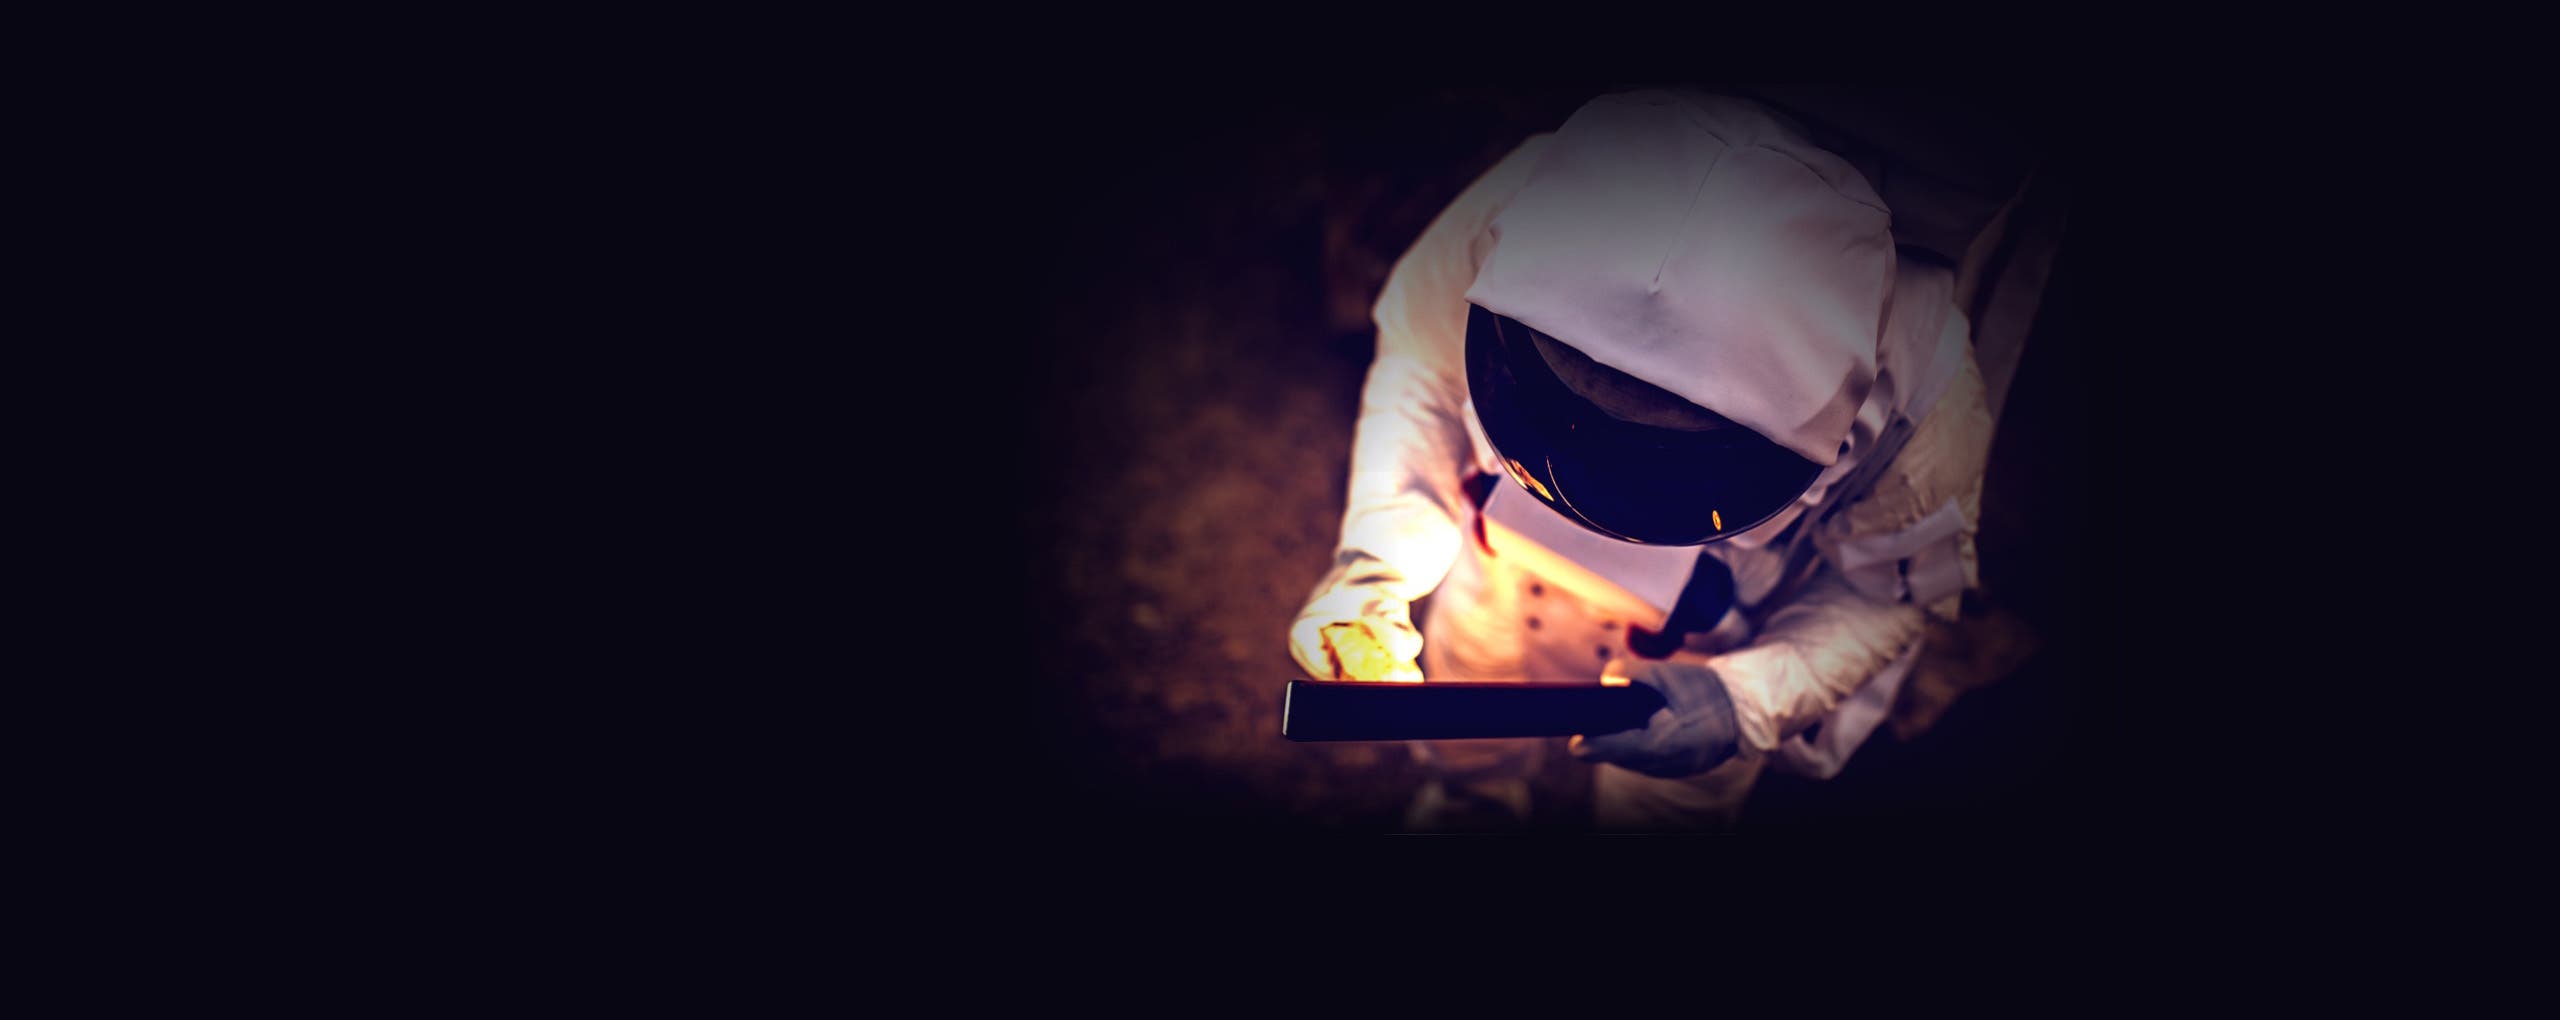 Astronaut, der ein beleuchtetes Objekt hält Hintergrundbild